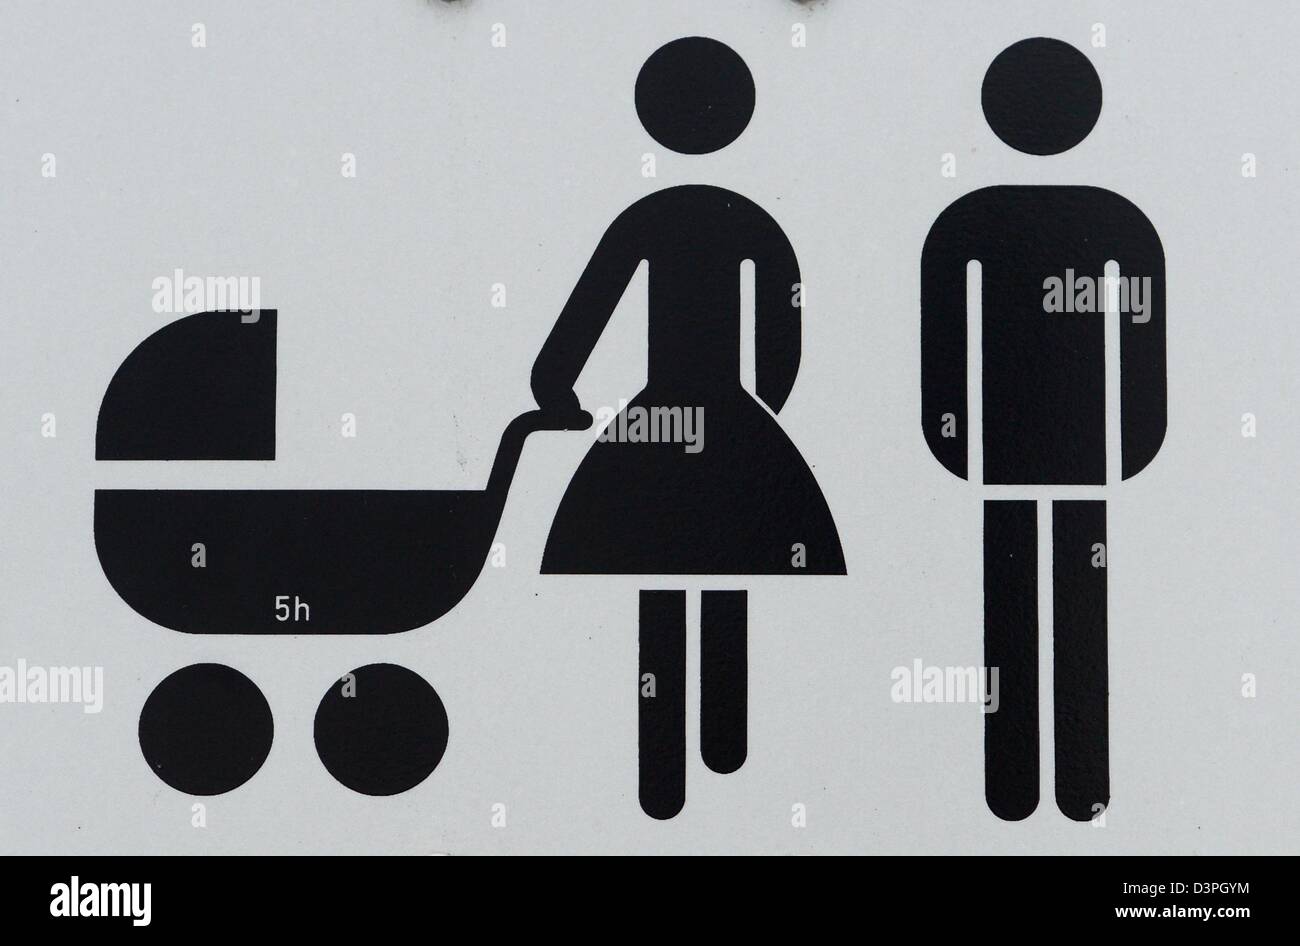 Un panneau routier illustre les pictogramm d'une famille avec poussette de bébé à Berlin, Allemagne, 18 février 2013. Jens Kalaene Banque D'Images